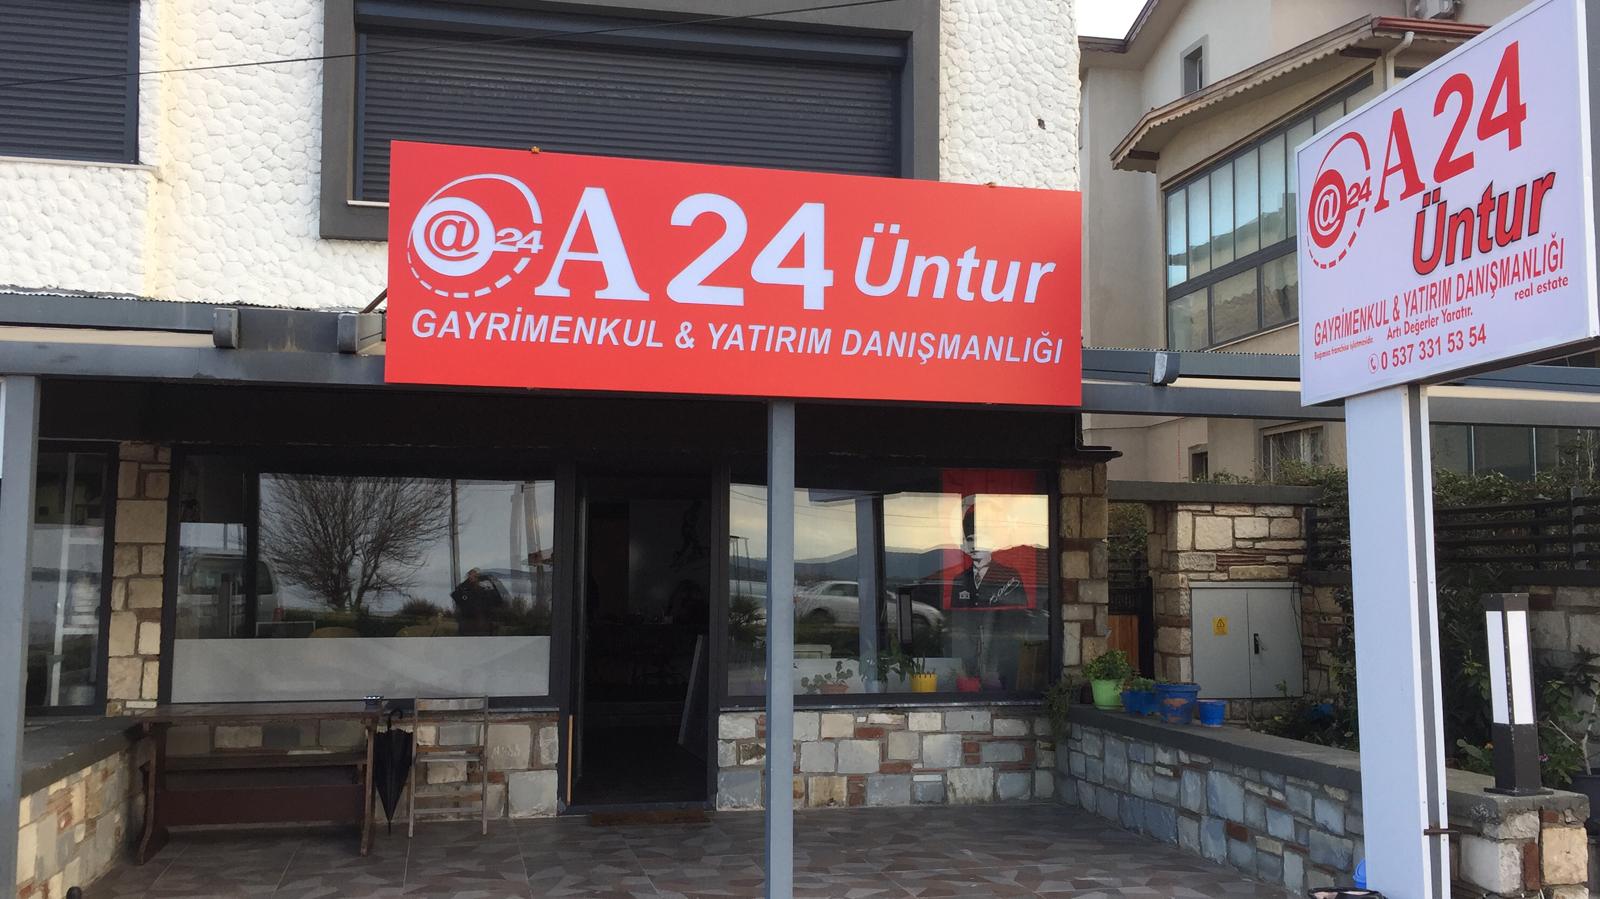 A24 ÜNTUR GAYRİMENKUL